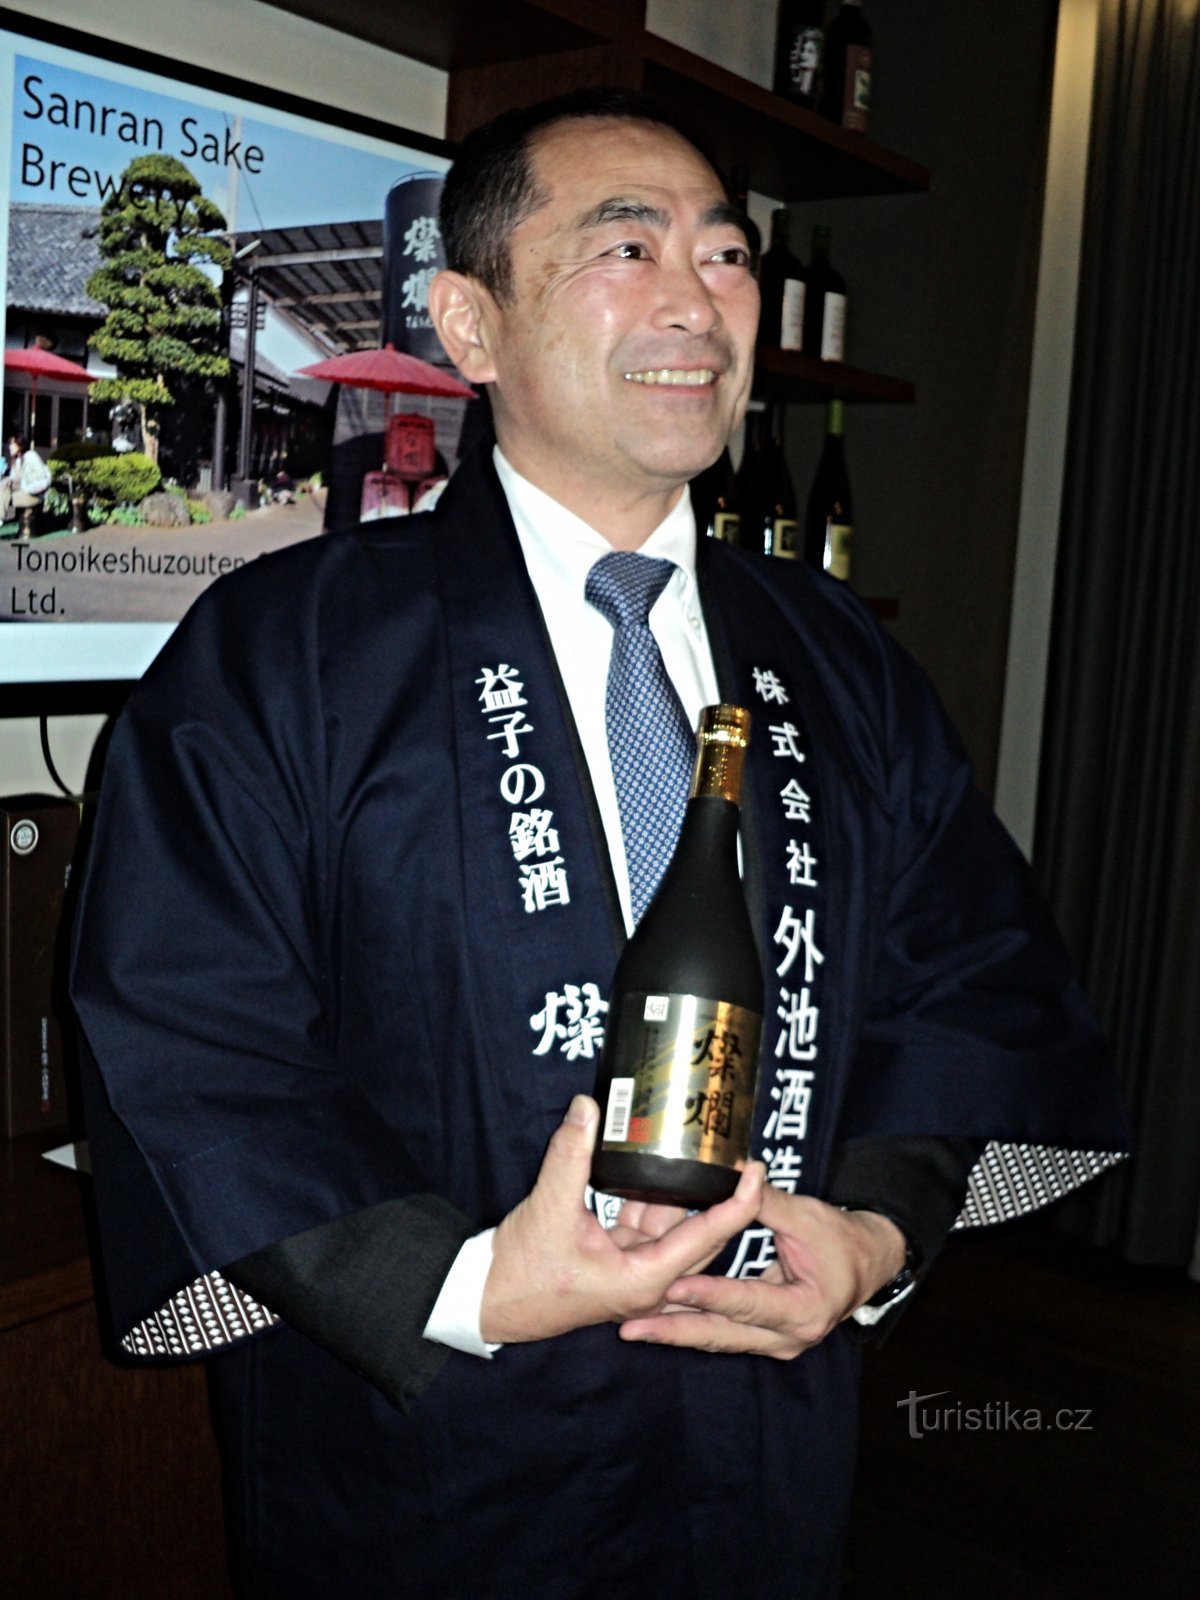 Shigeki Tonoike este un producător de sake din a treia generație.